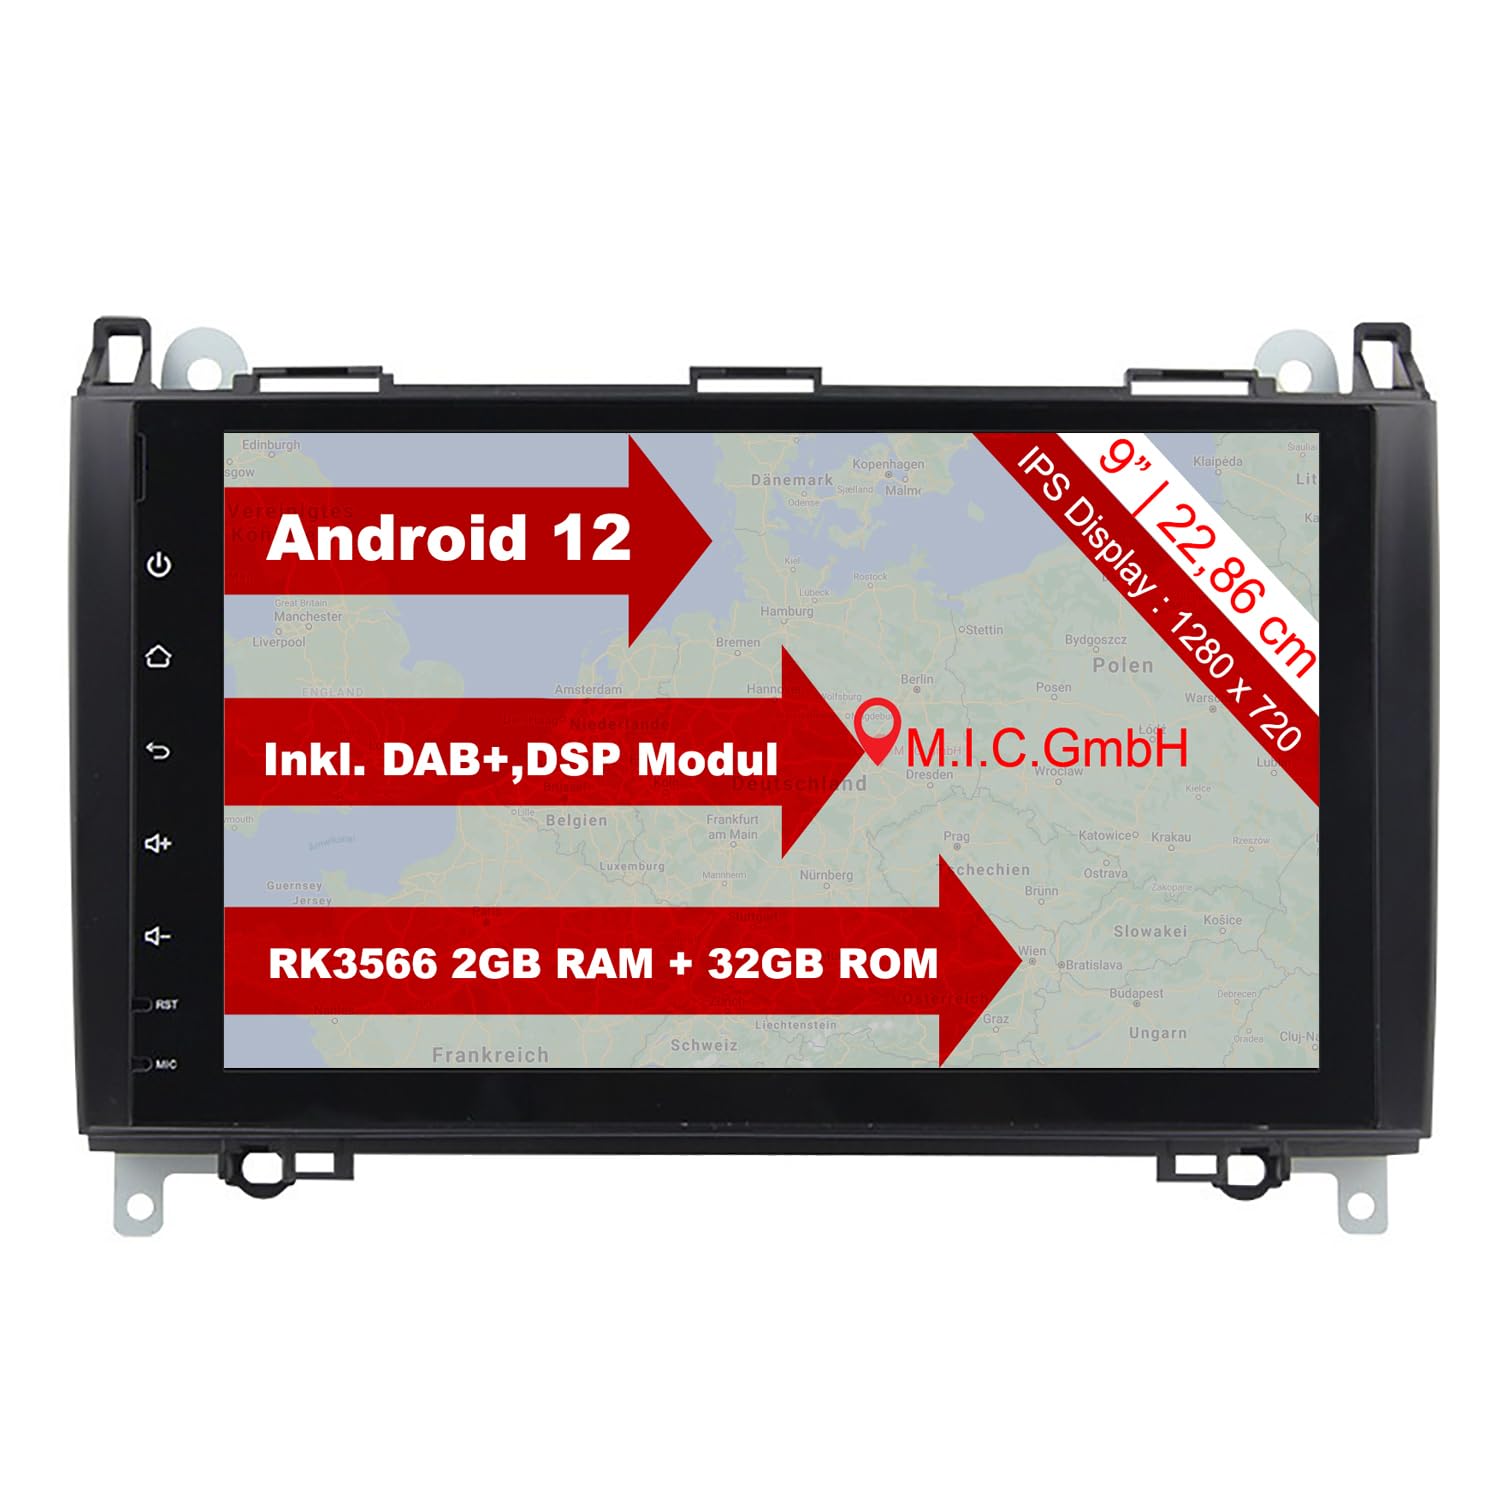 M.I.C. AB9-lite Android 12 Autoradio mit navi RK3566 2G+32G Ersatz für Mercedes Benz A-Klasse W169 B-Klasse W245 Viano Vito W639 Sprinter VW Crafter : DSP DAB BT 5.0 WiFi 2 din 9" IPS Bildschirm USB